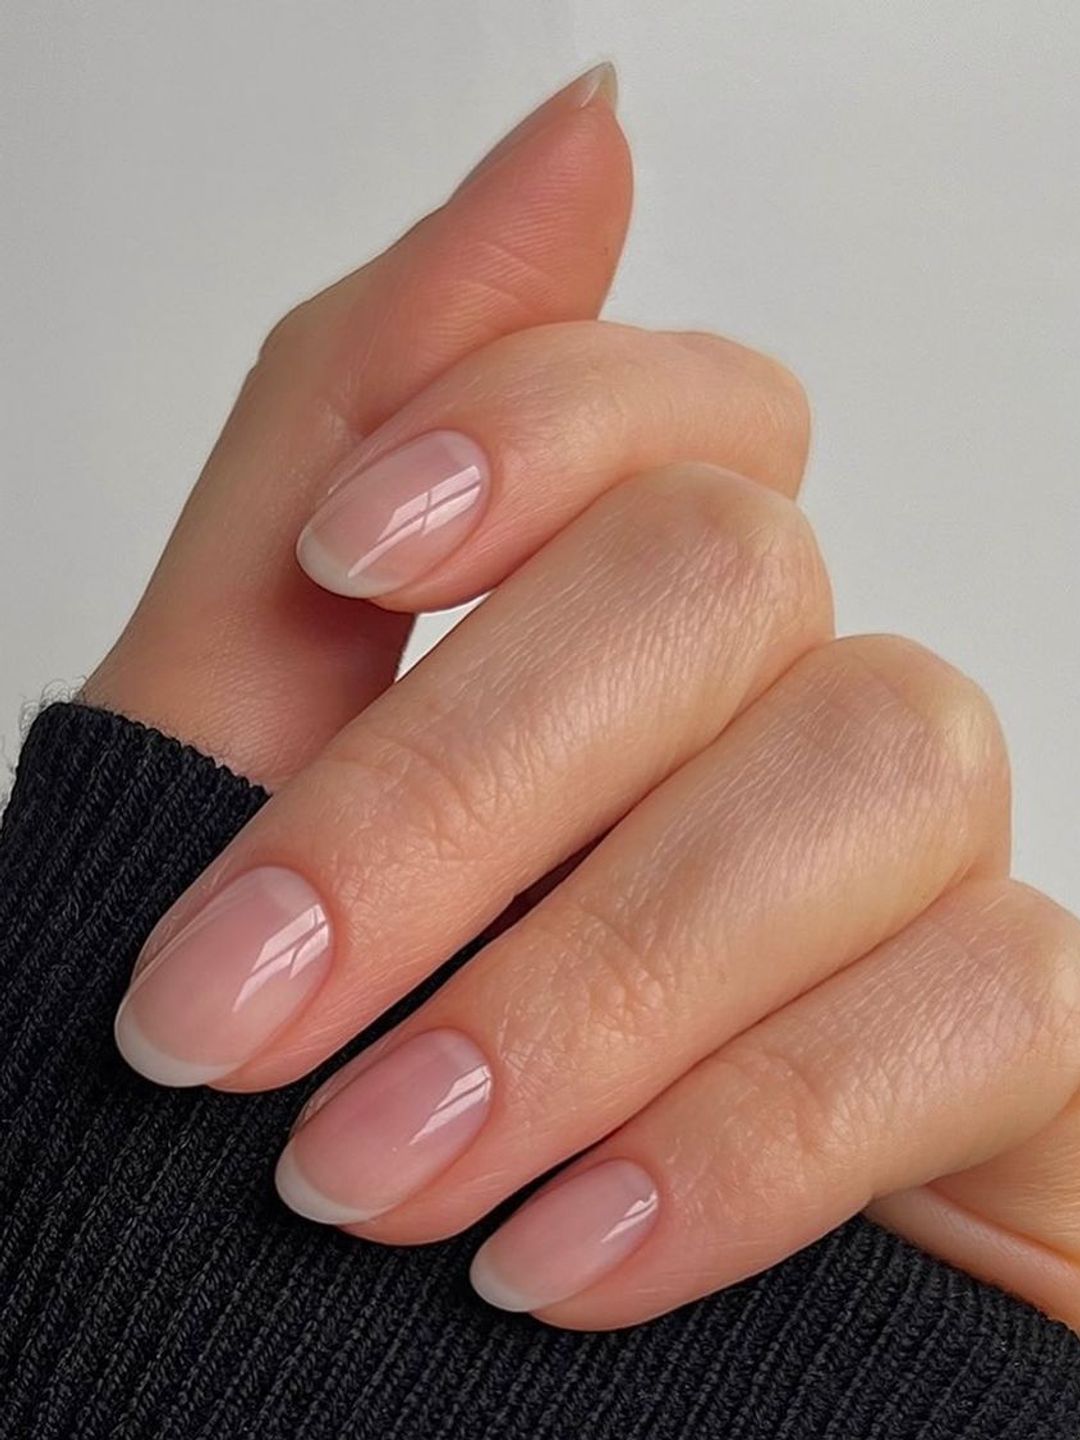 Natural-looking nails 